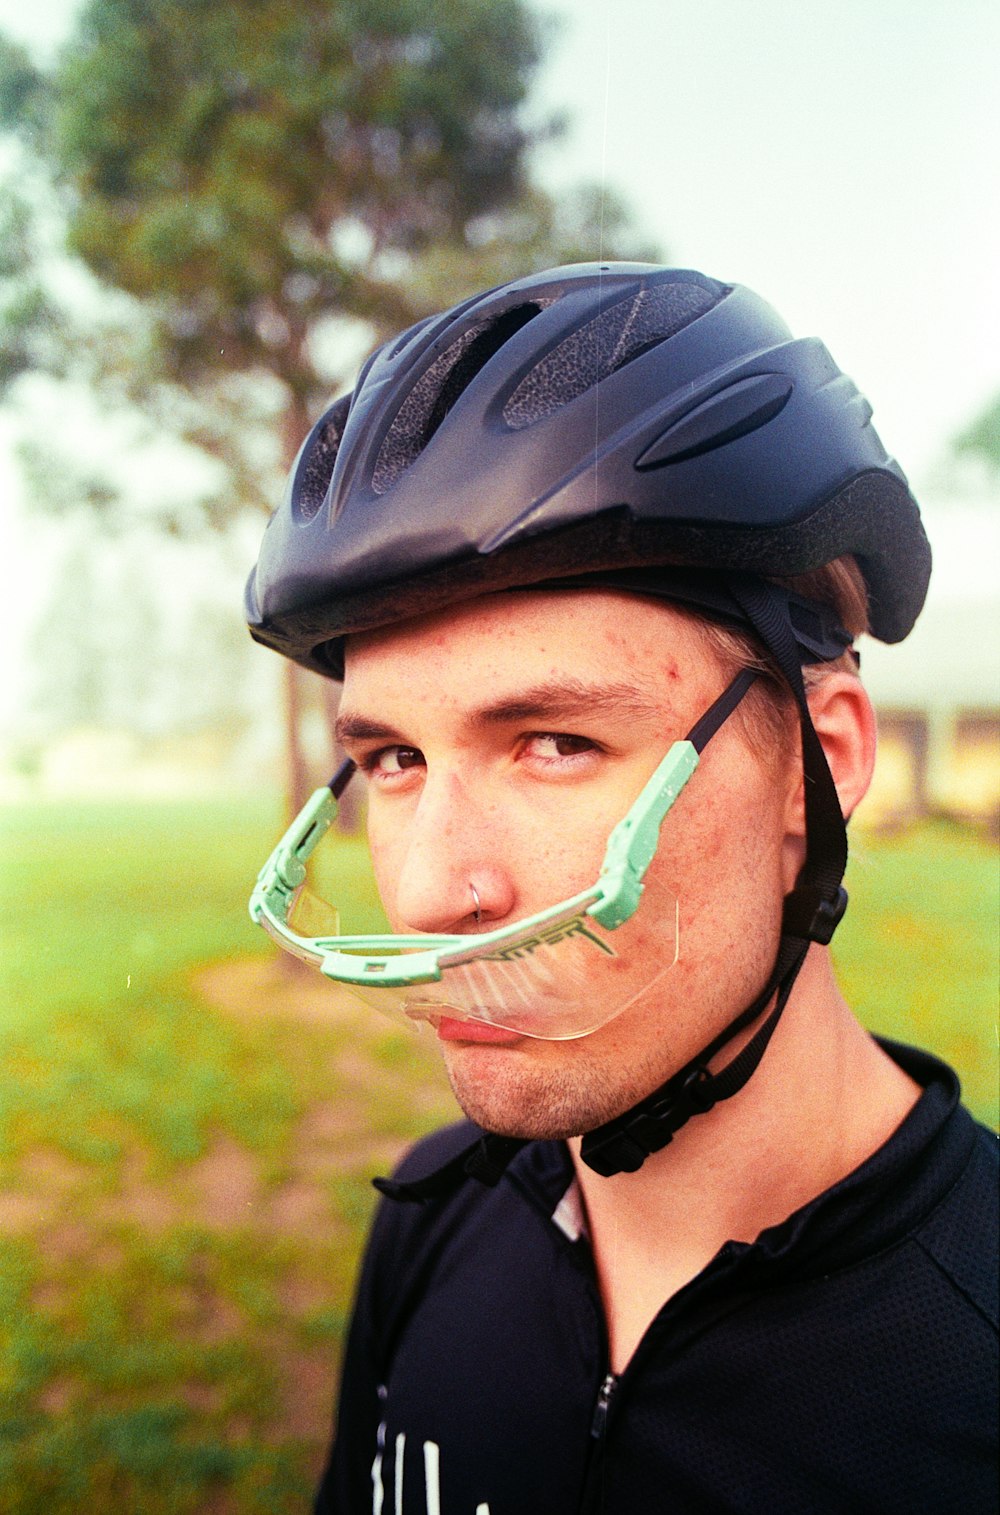 man wearing black bicycle helmet